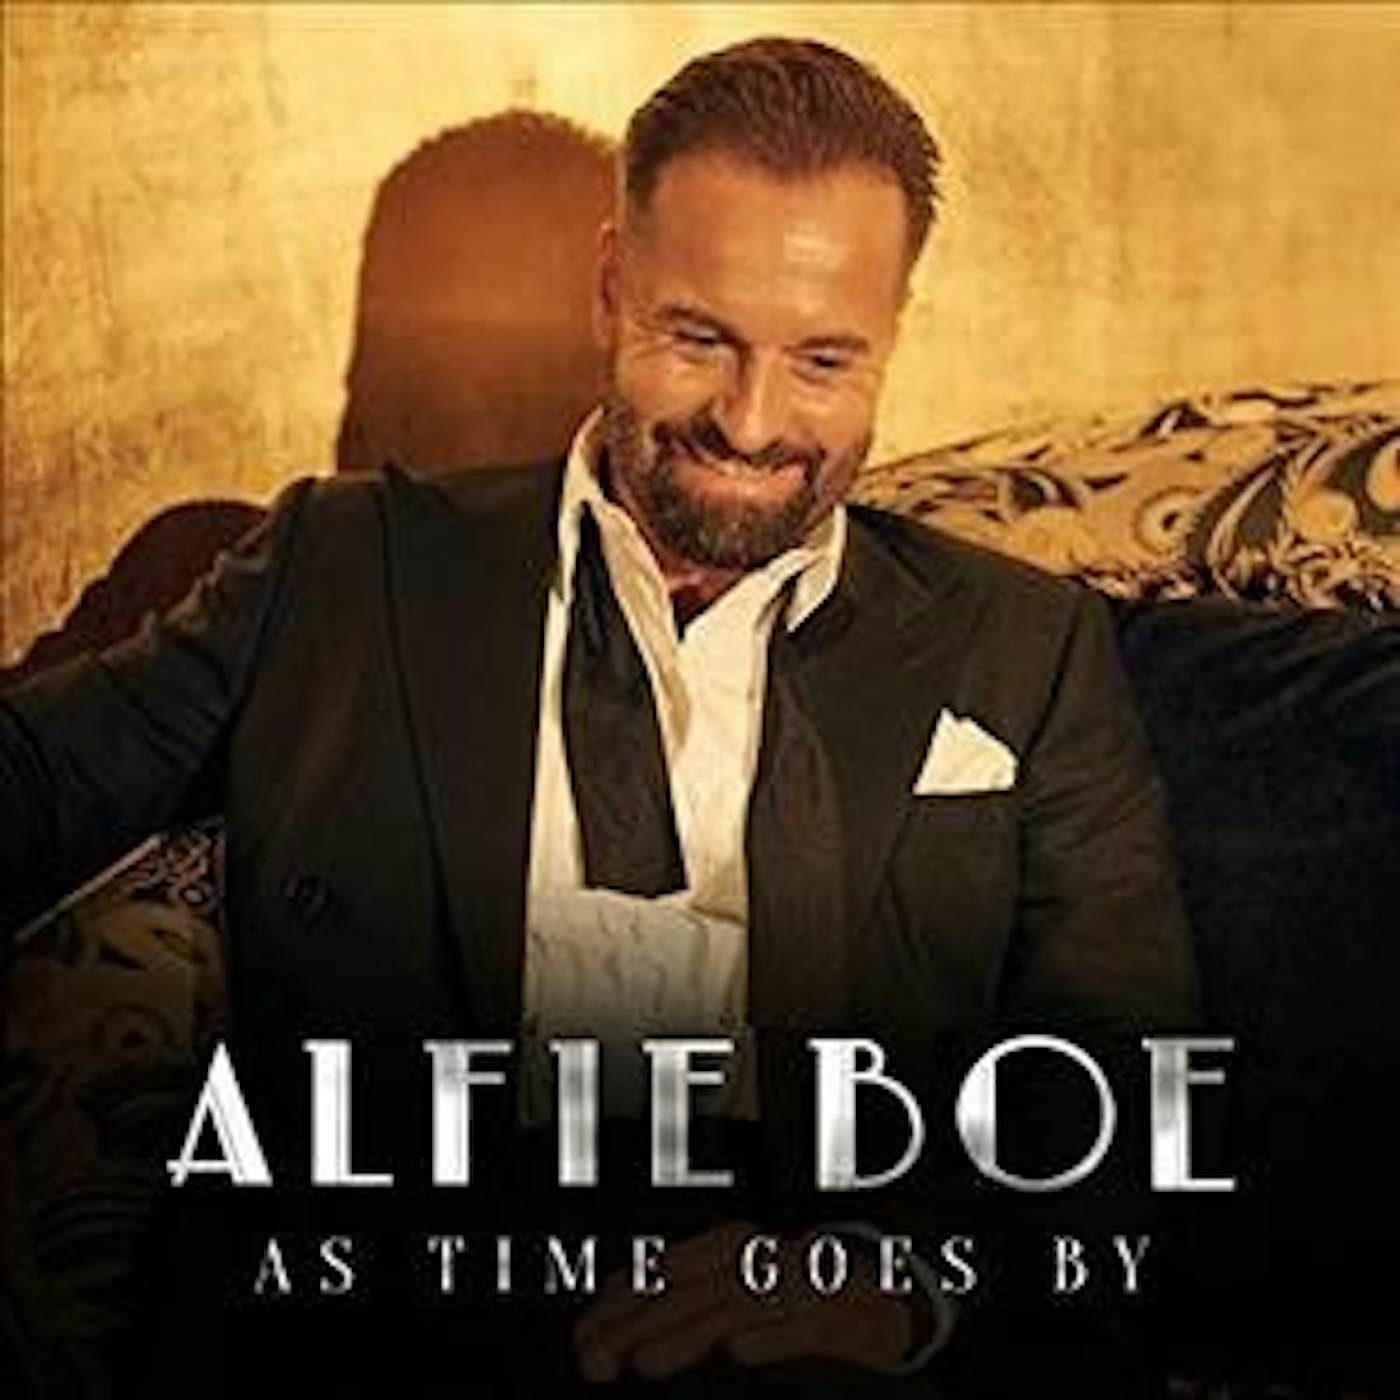 Alfie Boe As Time Goes By CD